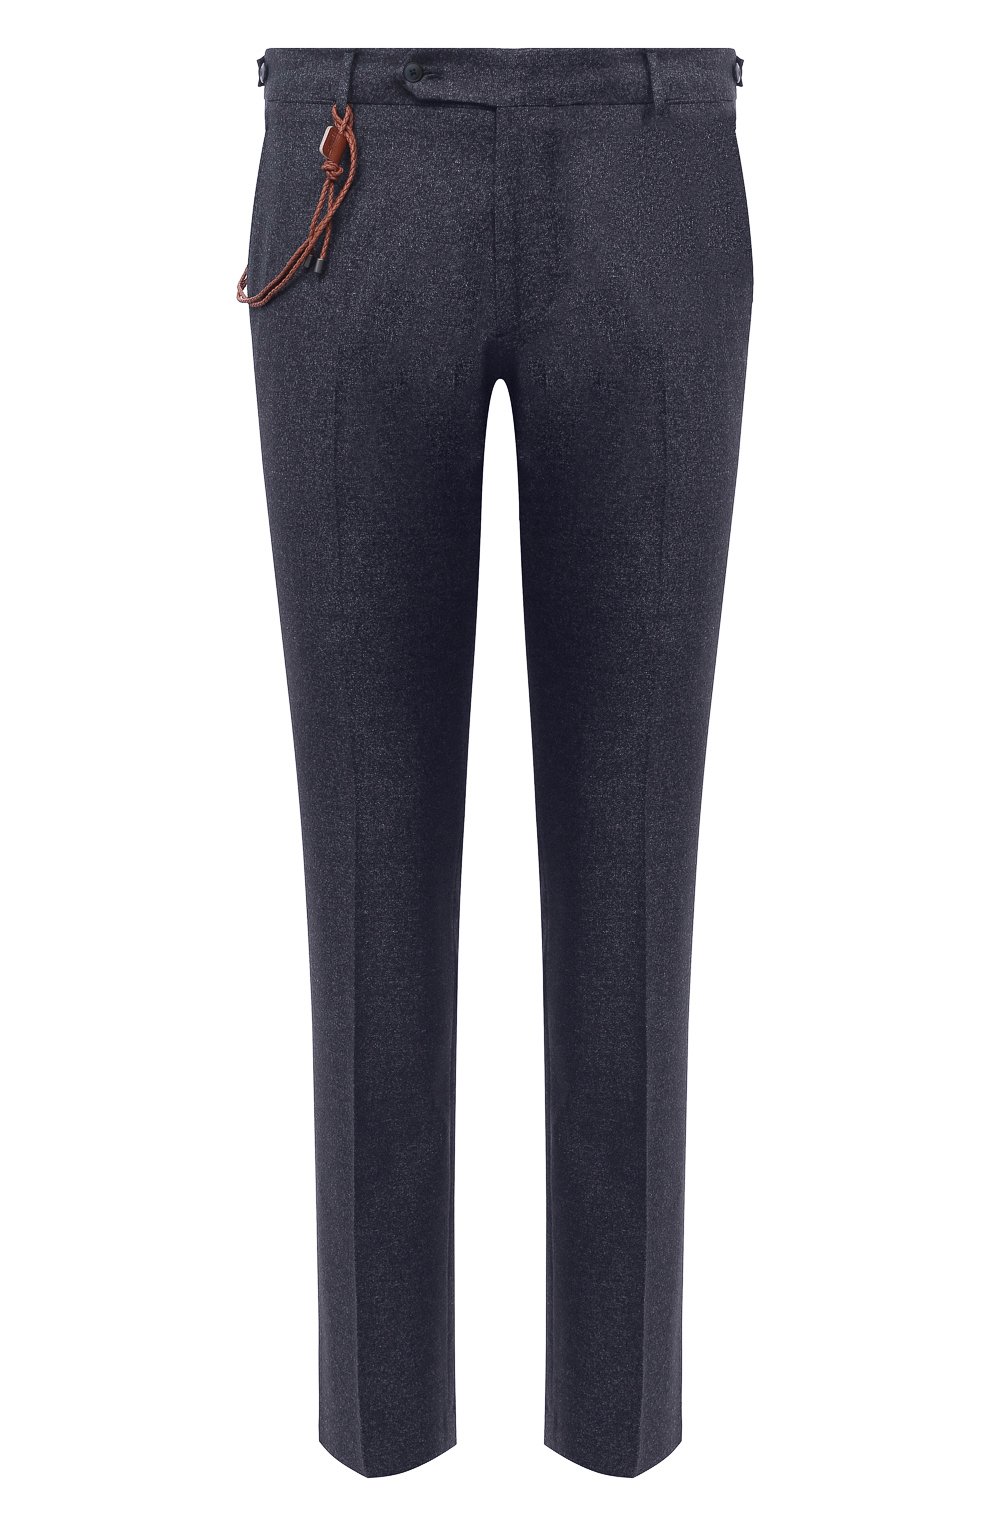 Мужские брюки из шерсти и хлопка BERWICH синего цвета, арт. SC/1 FIBB/GB1748 | Фото 1 (Материал внешний: Шерсть; Длина (брюки, джинсы): Стандартные; Случай: Повседневный; Стили: Классический; Материал подклада: Купро)